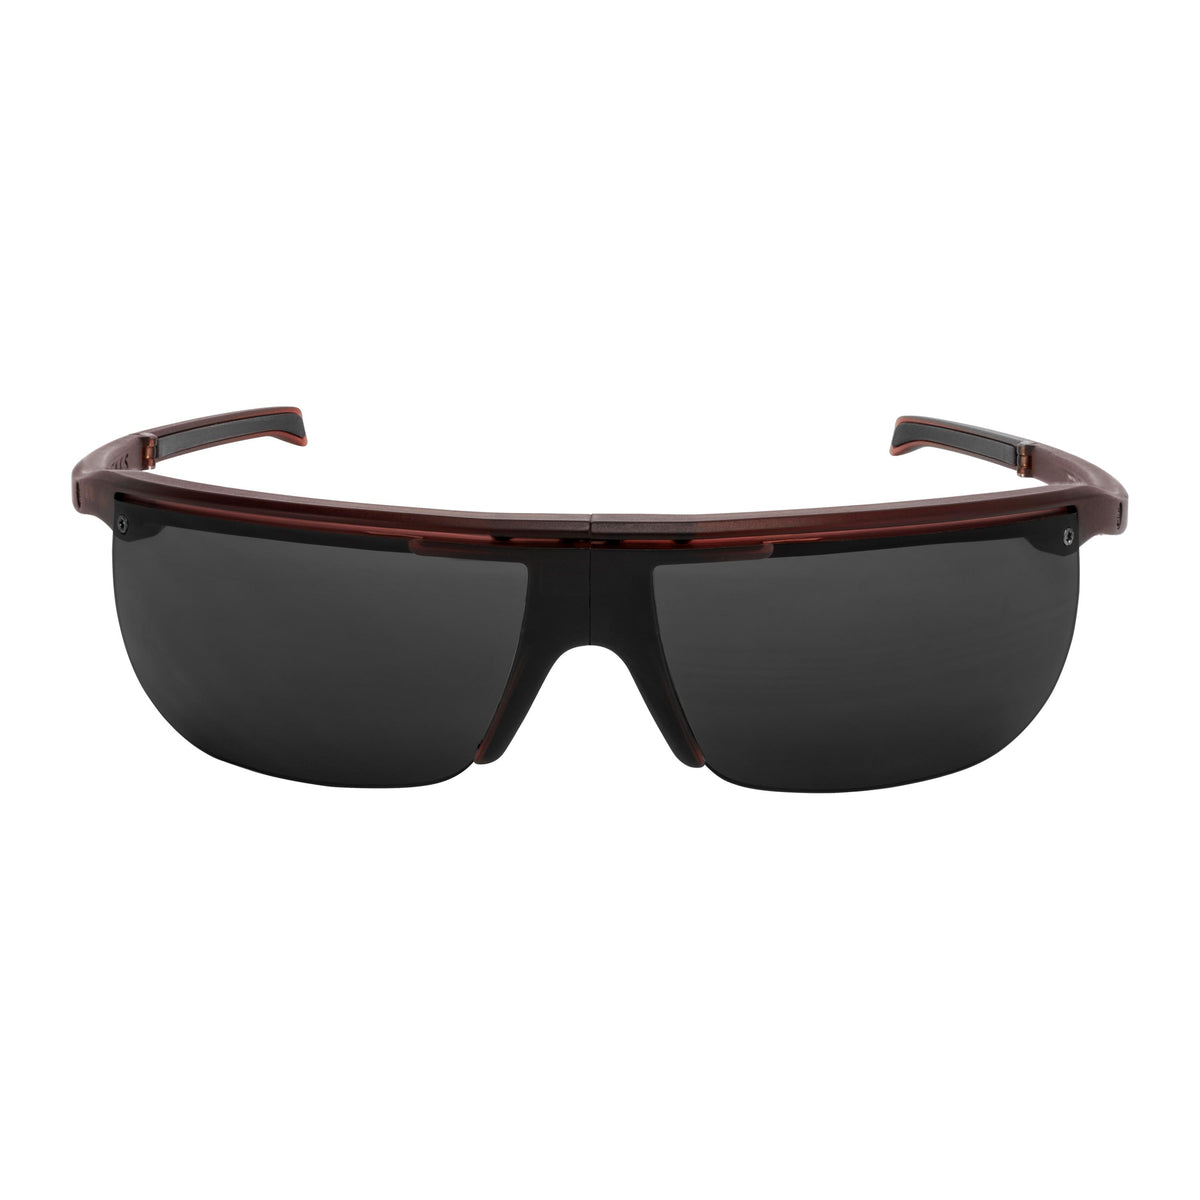 Popticals, Premium Compact Sunglasses, PopArt, 020030-WYGP, Polarized Sunglasses, Matte Wine Crystal, Gray Lenses, Front Tilt View